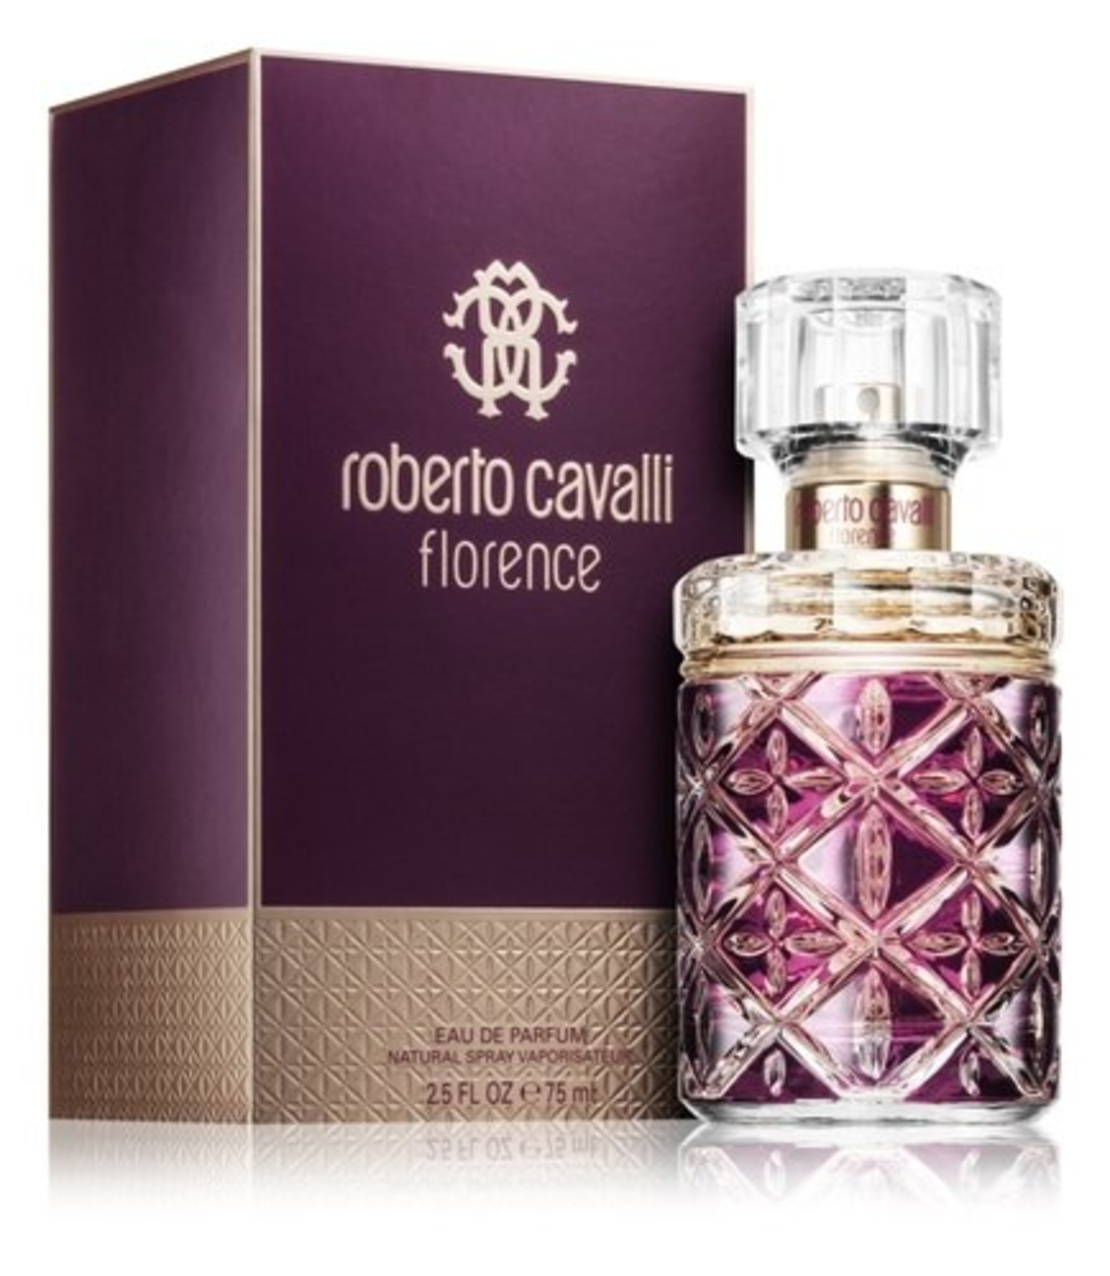 פלורנס רוברטו קוואלי – א.ד.פ 75 מ'ל Roberto Cavalli Florence Eau de Parfum for Women